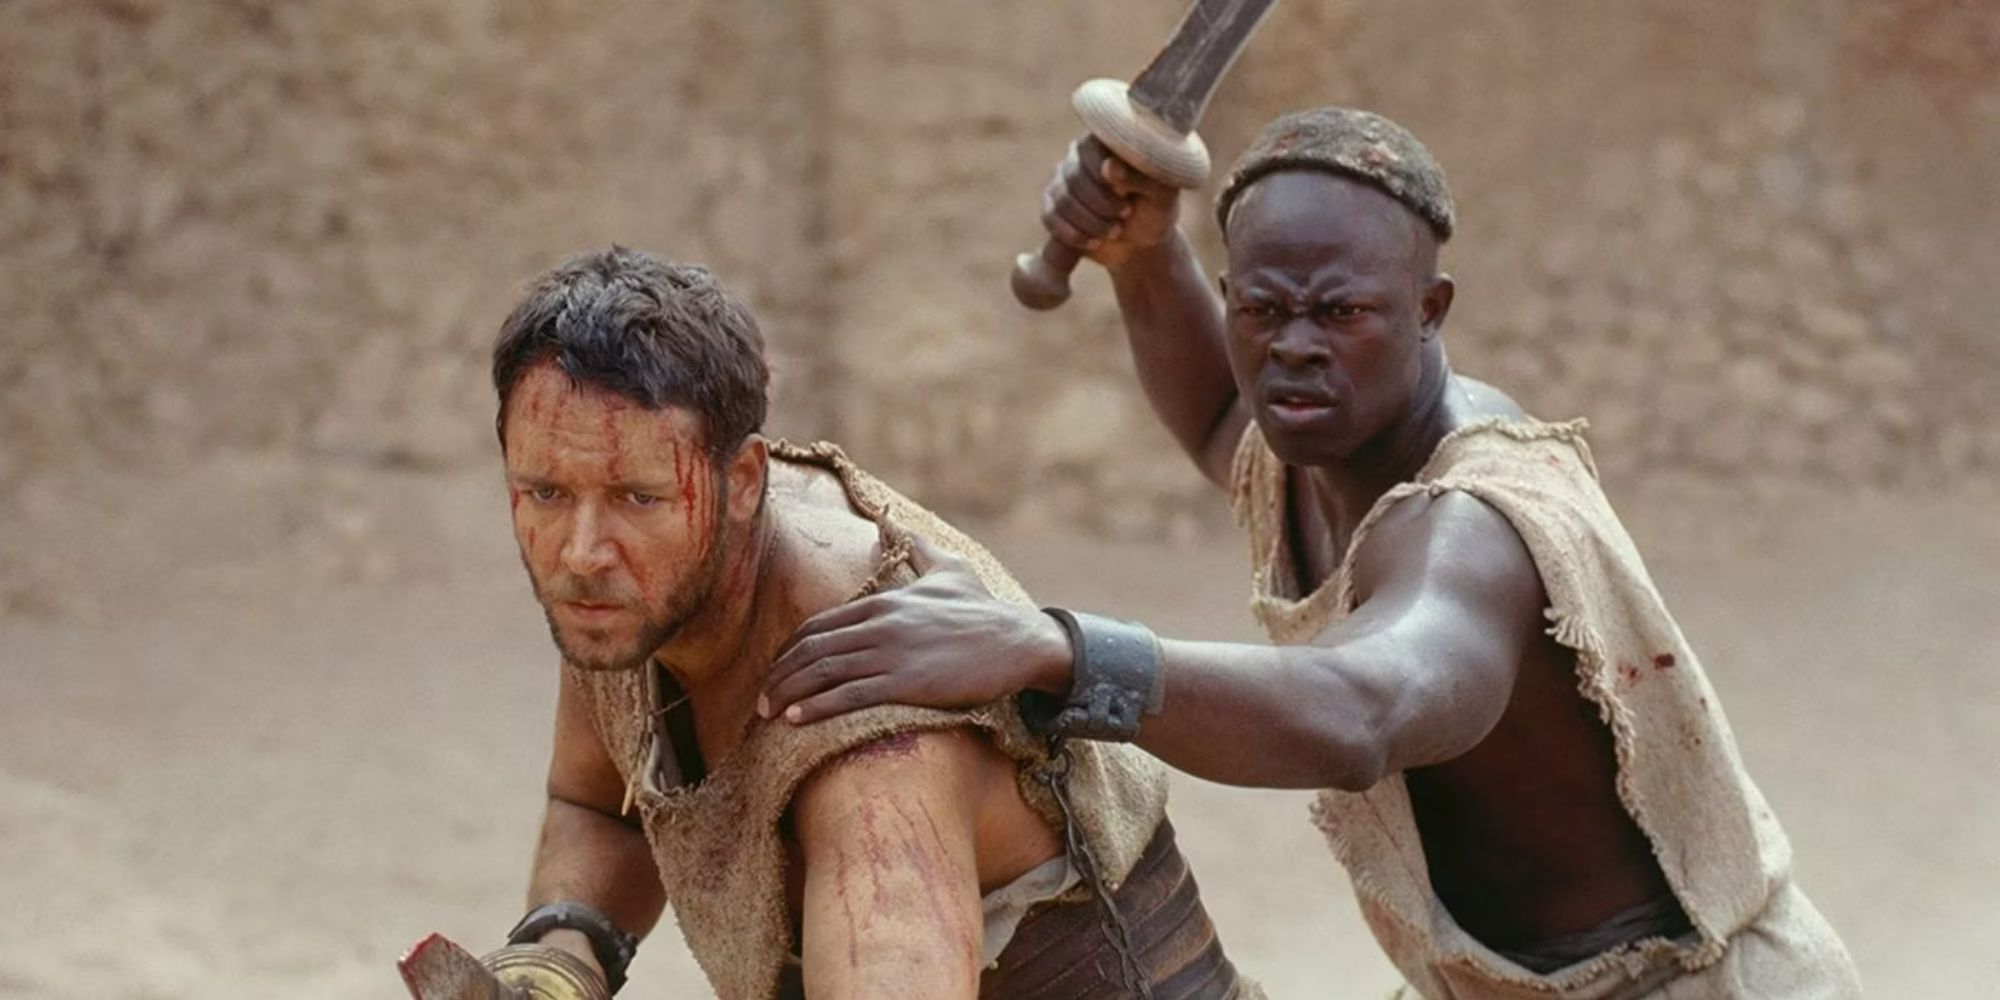 Russell Crowe y Djimon Hounsou sosteniendo espadas y preparándose para una pelea en Gladiator.